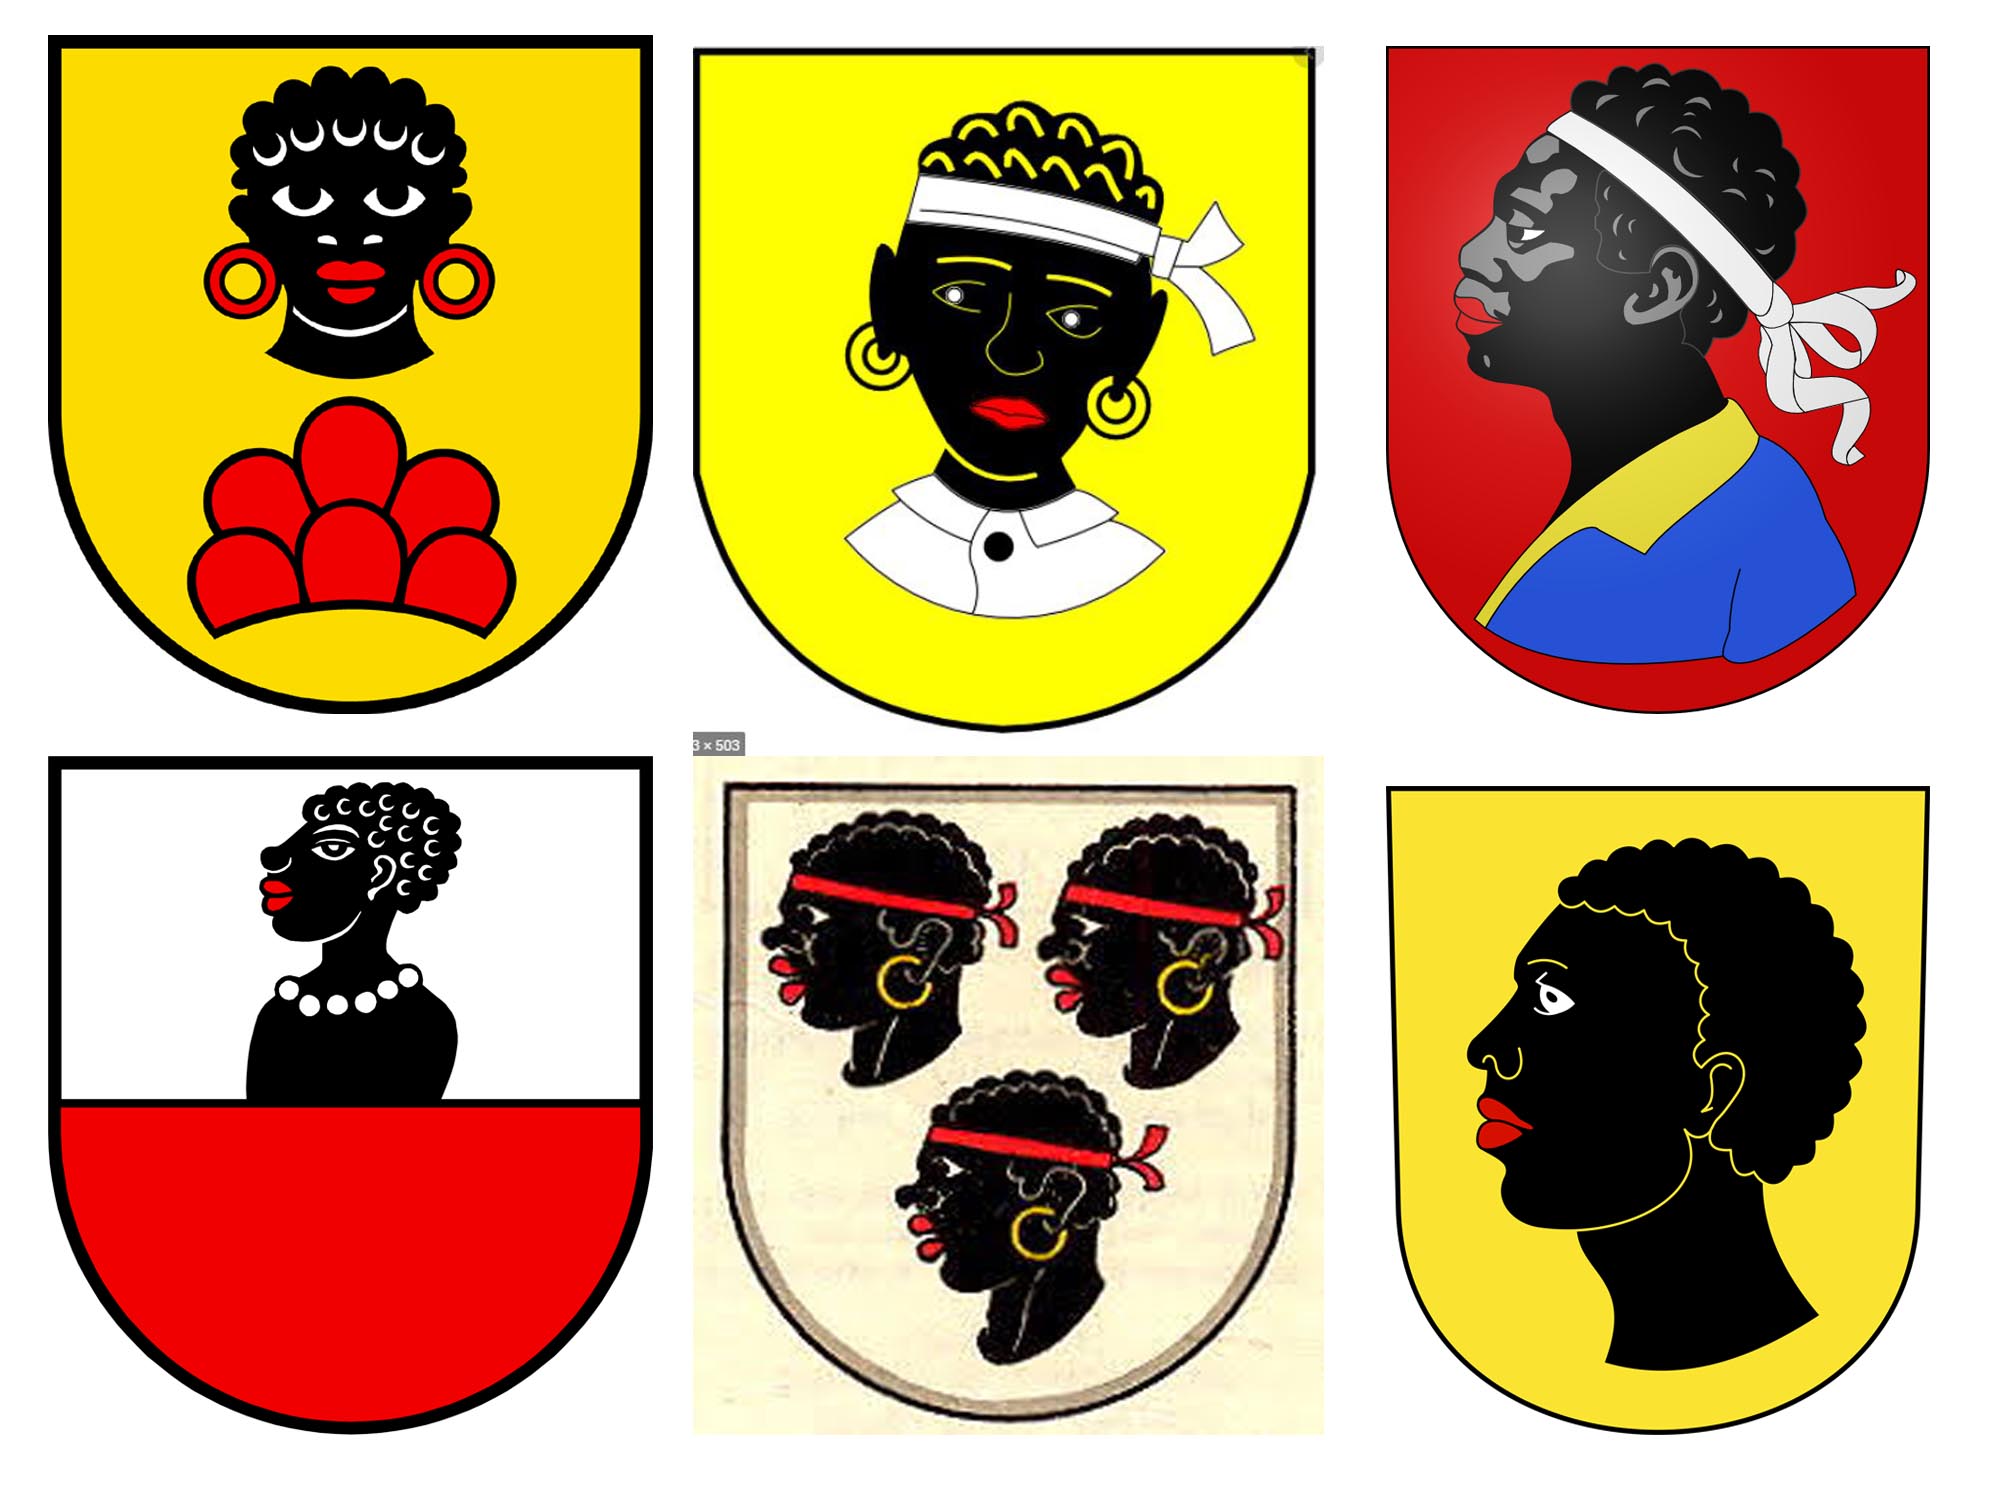 أنواع مختلفة من شعارات النبالة تحمل صورا لأشخاص من ذوي البشرة السوداء.